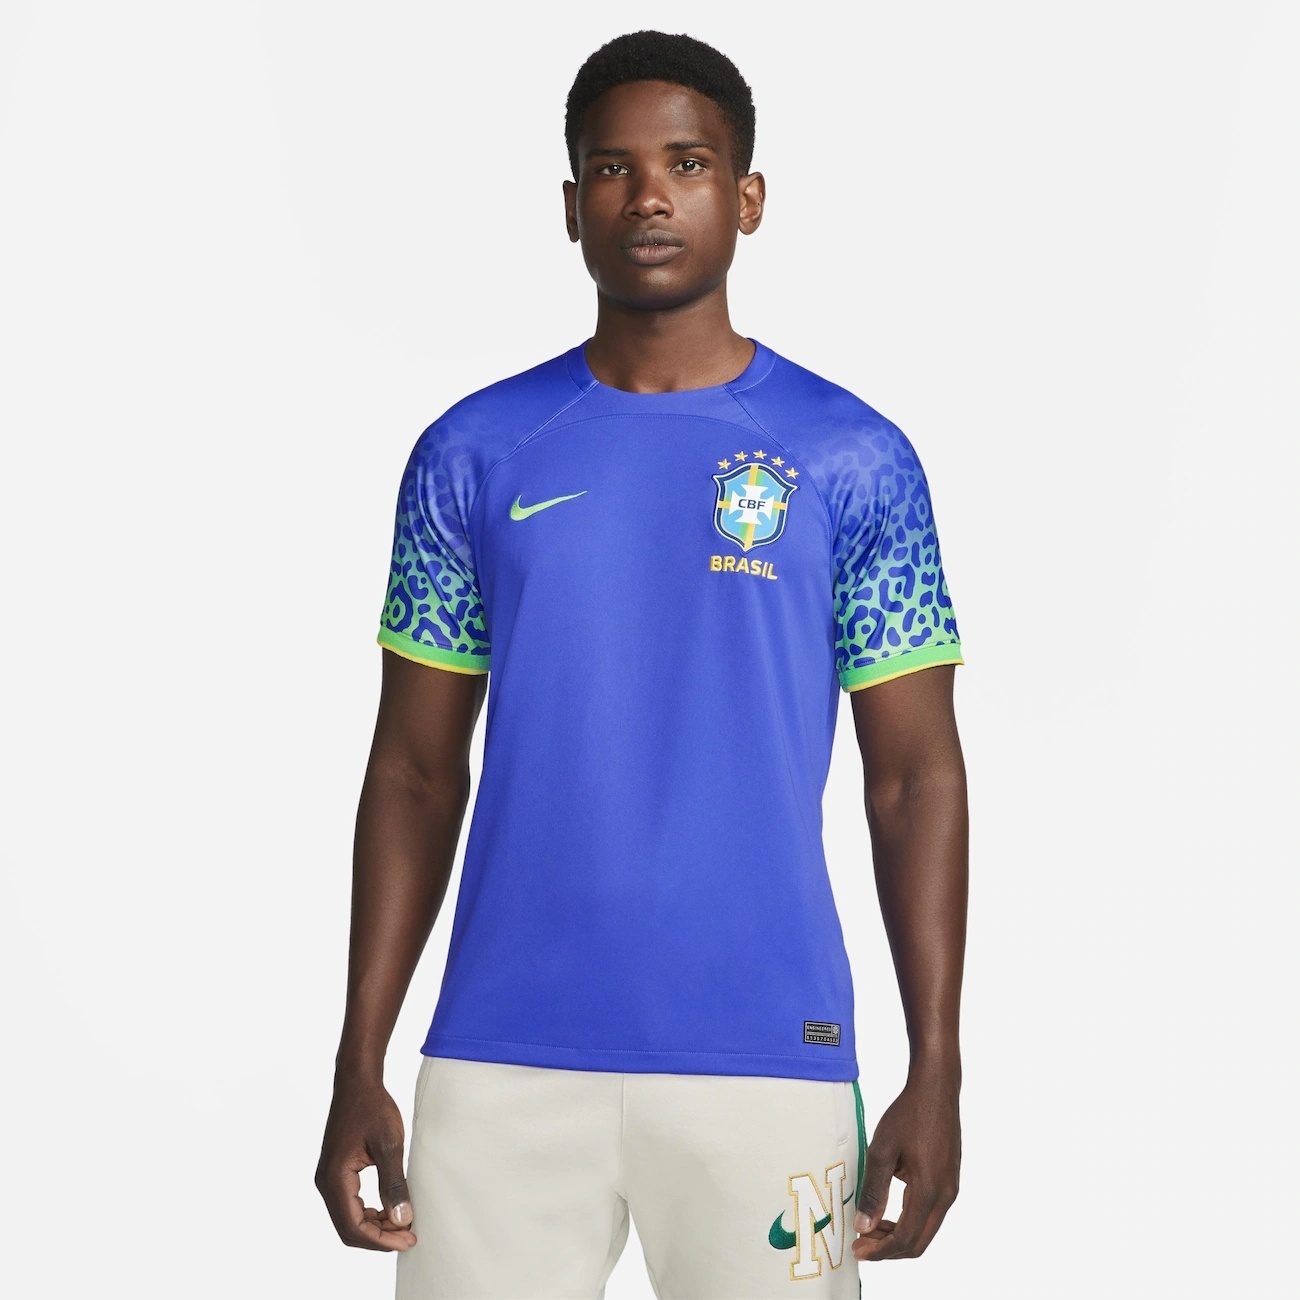 Peças esgotadas e polêmicas na web: por trás do uniforme do Brasil na Copa  - 09/08/2022 - UOL Nossa